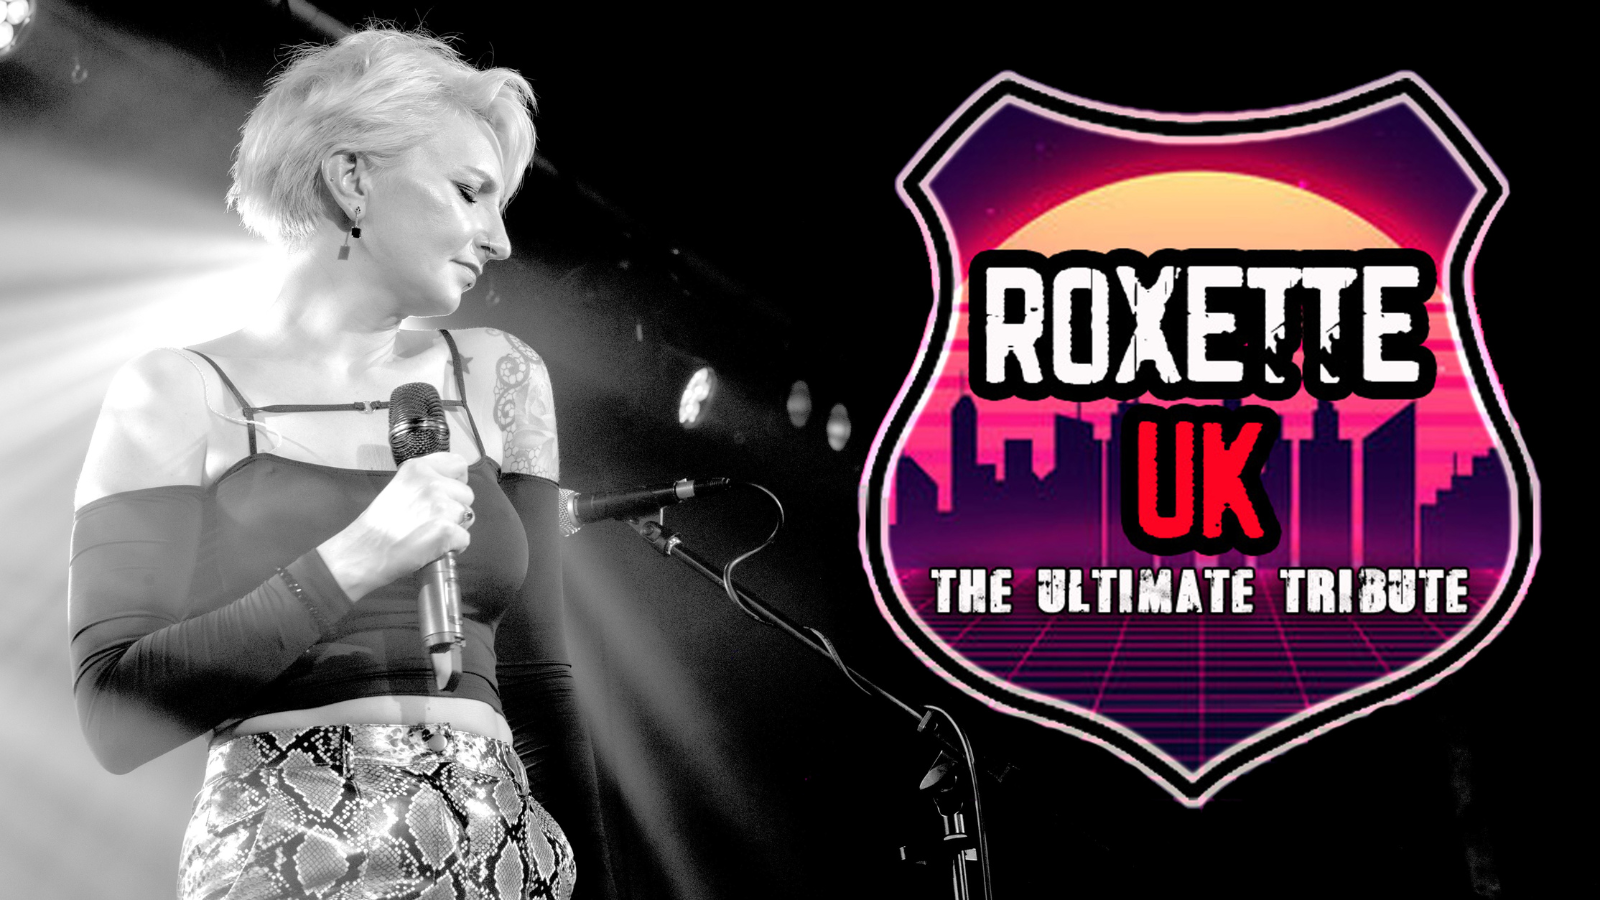 Roxette UK